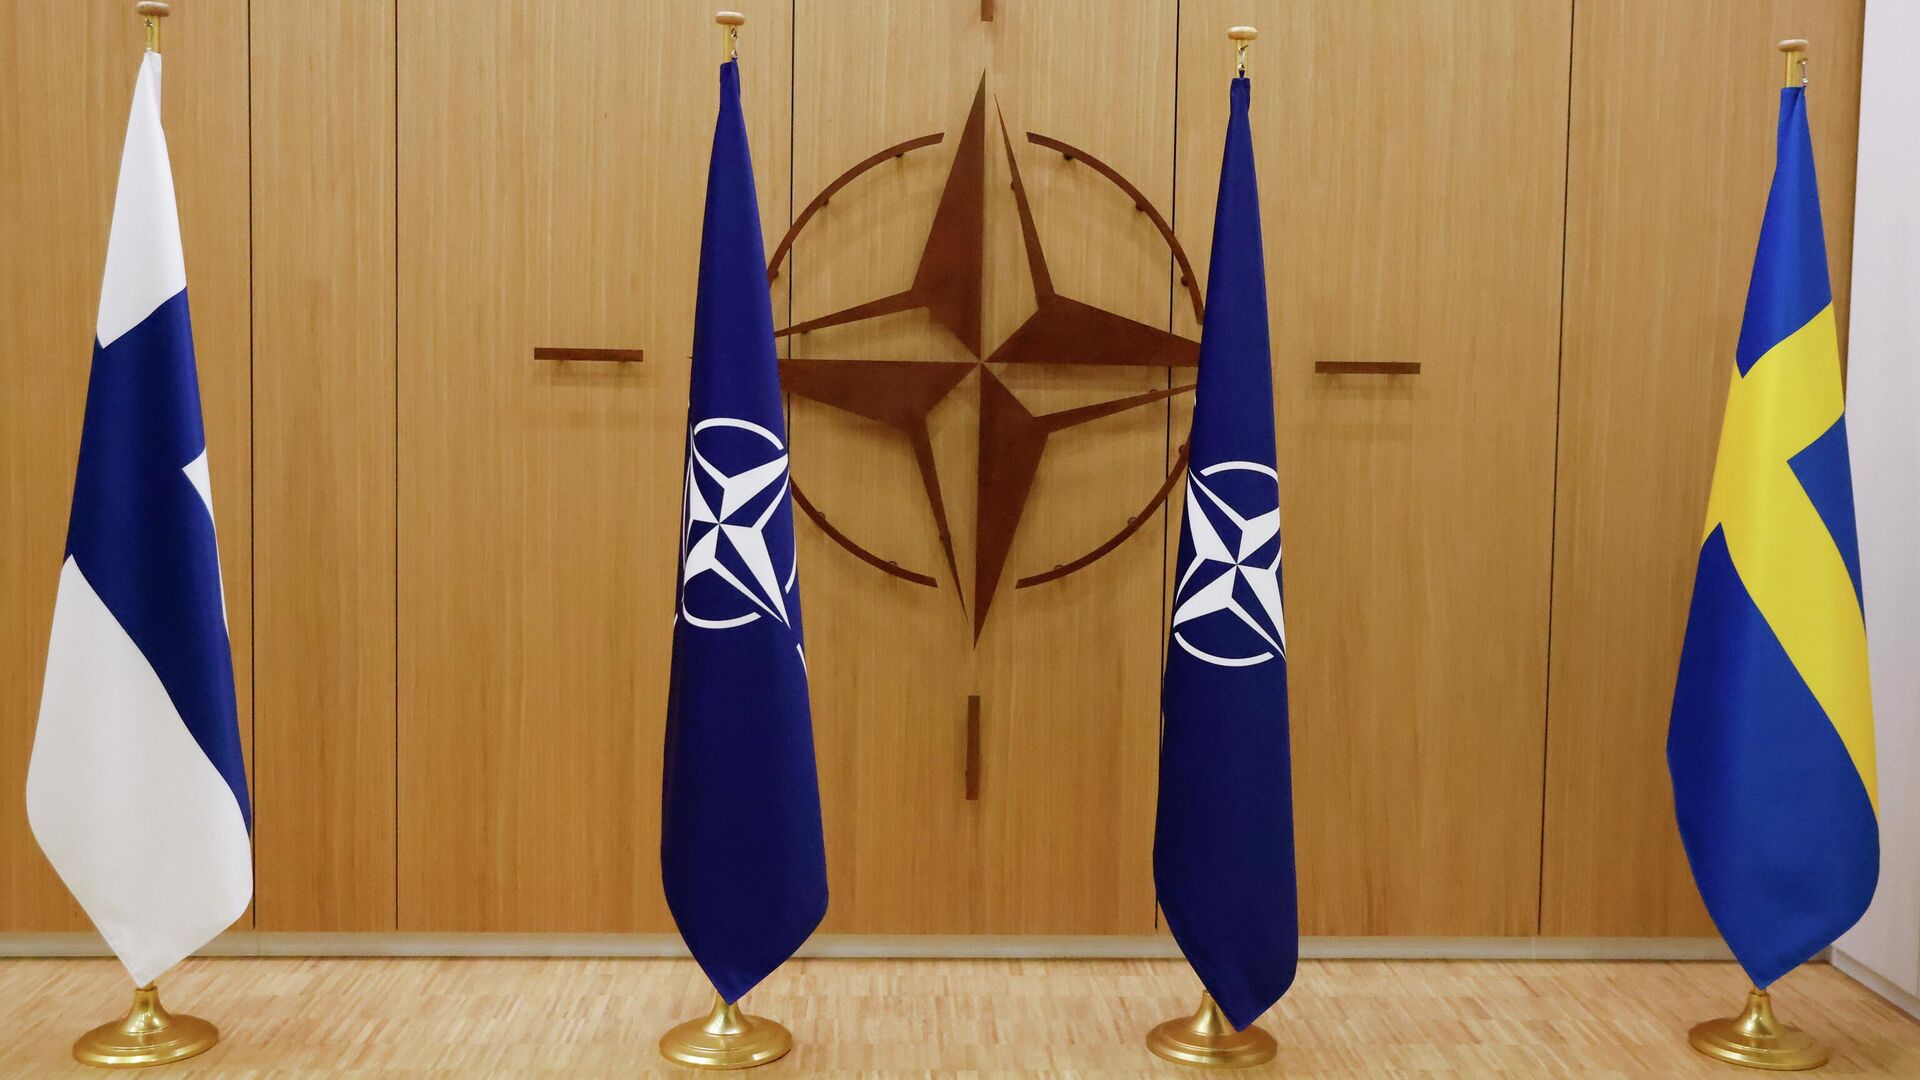 Ankara says Turkey has no problem with Finland over NATO membership